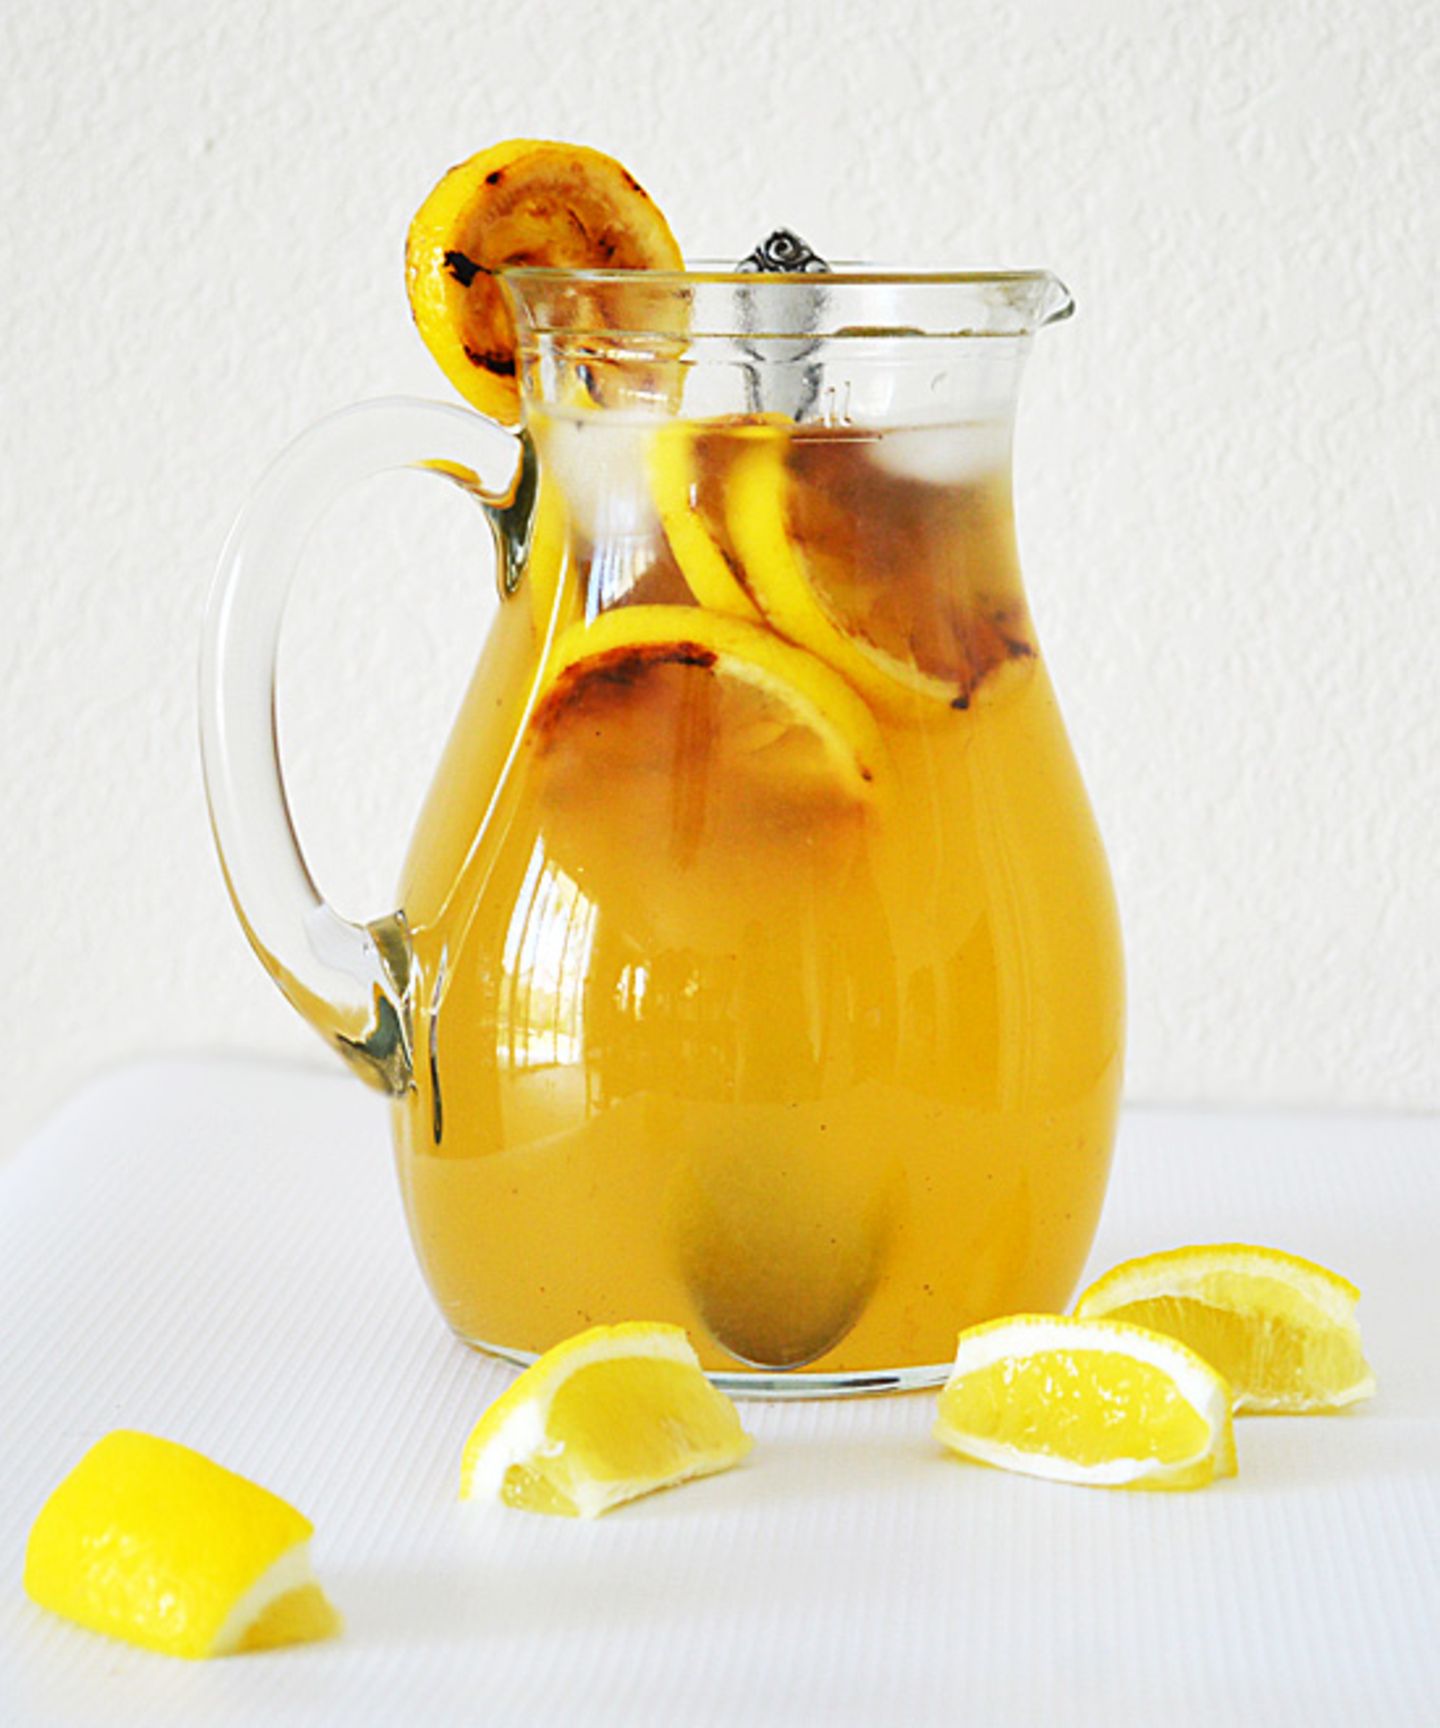 Diese Zitronen-Limonade birgt ein heißes Geheimnis